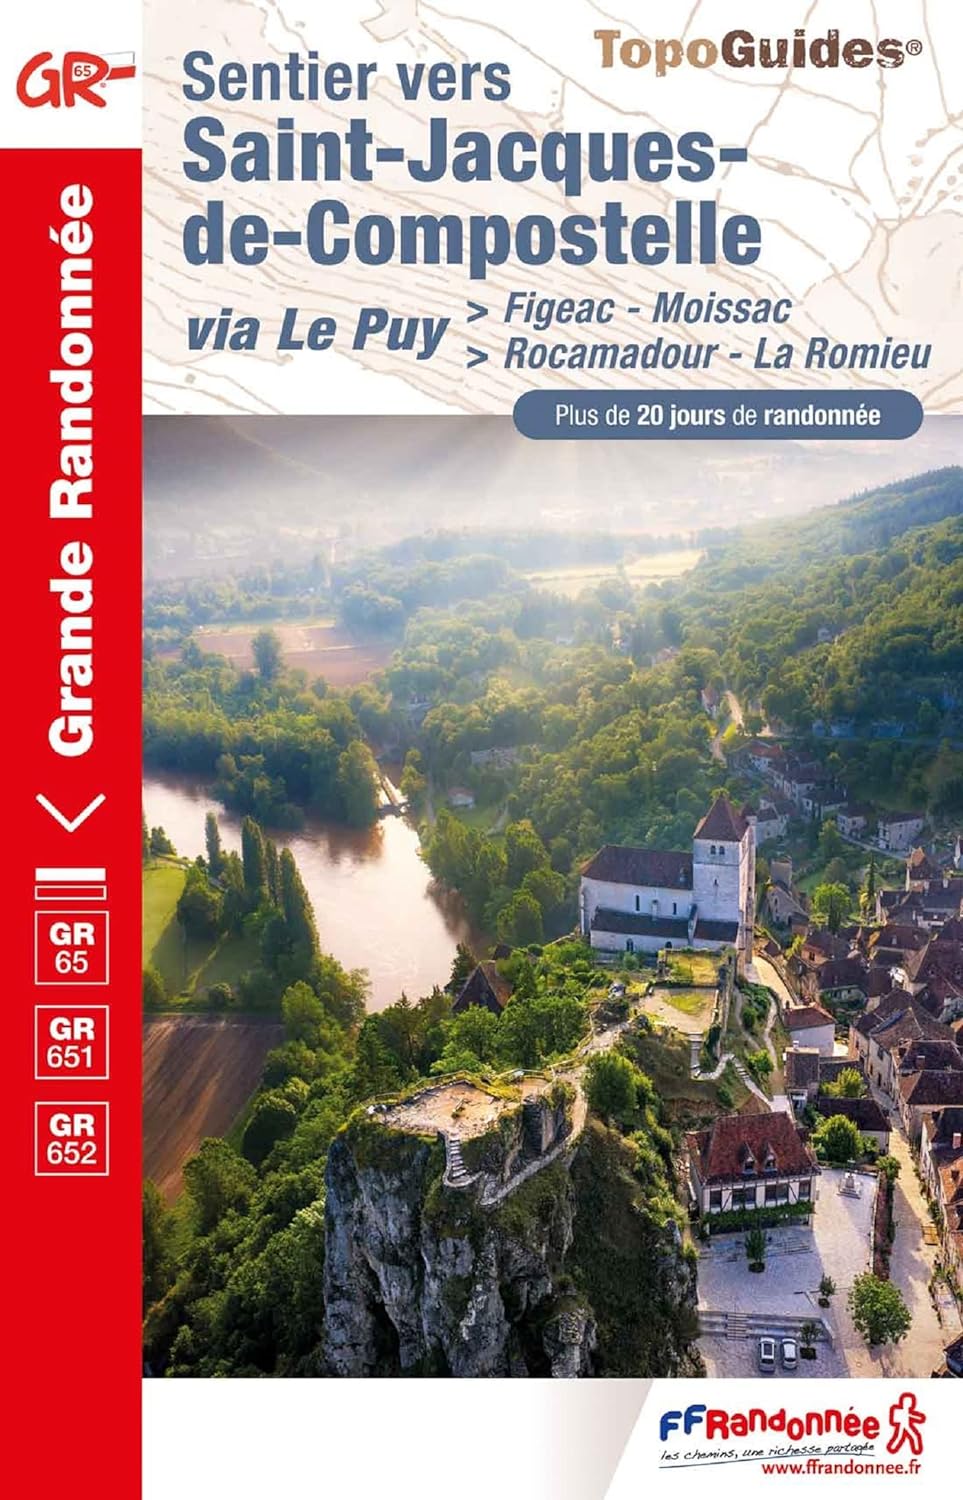 Online bestellen: Wandelgids - Pelgrimsroute 652 Saint-Jacques-de-Compostelle via Le Puy: Figeac - Moissac GR65 - GR651 - GR652 | FFRP